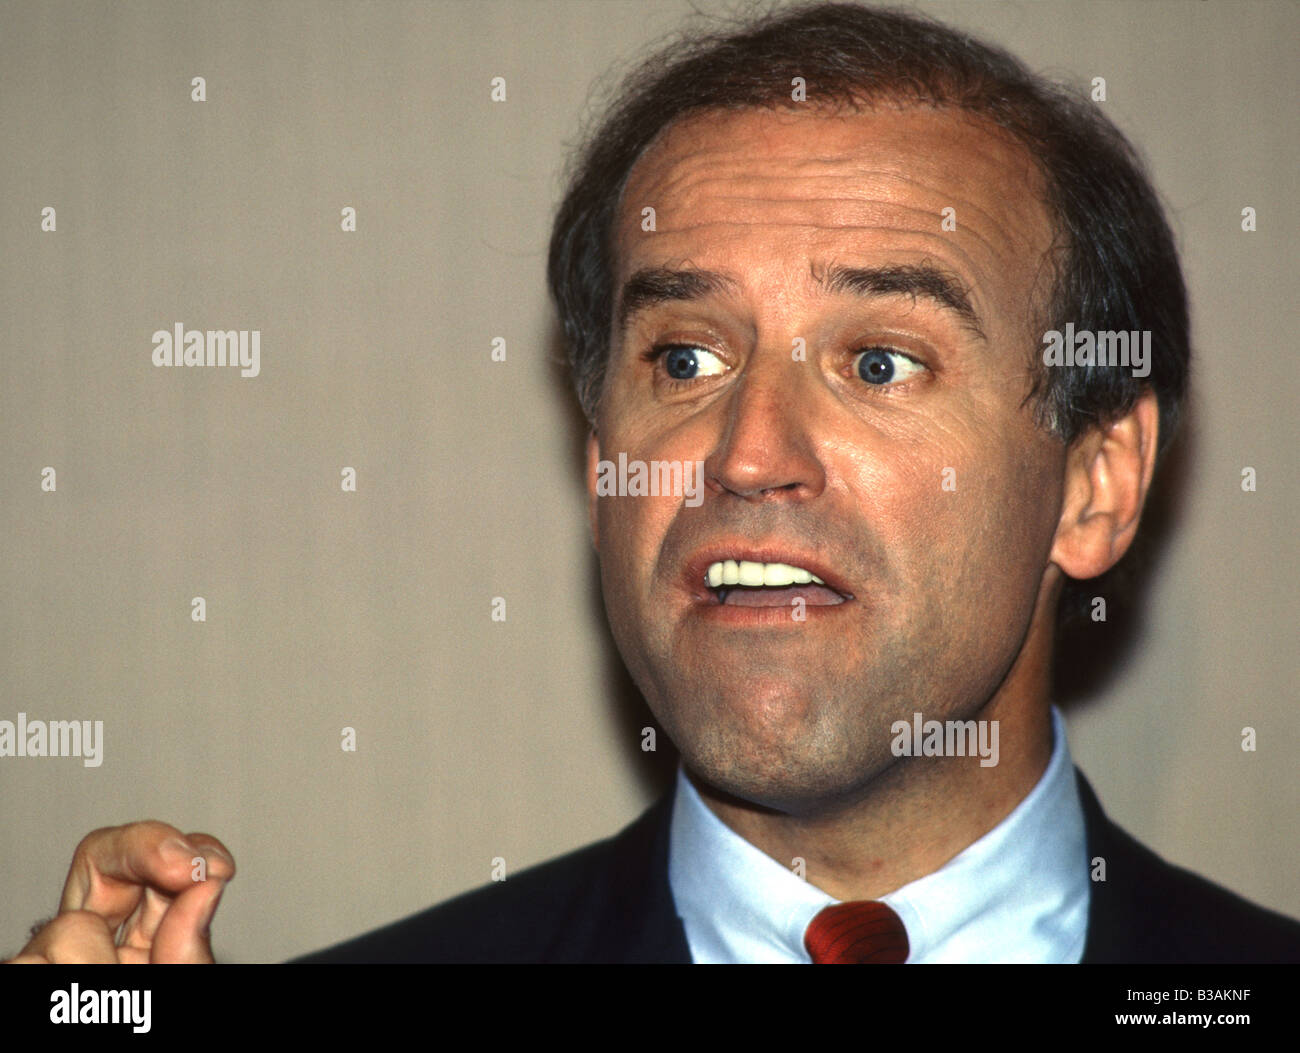 U S Senator from Delaware Joseph Biden campaigns for the democratic nomination for President in 1987 Stock Photo